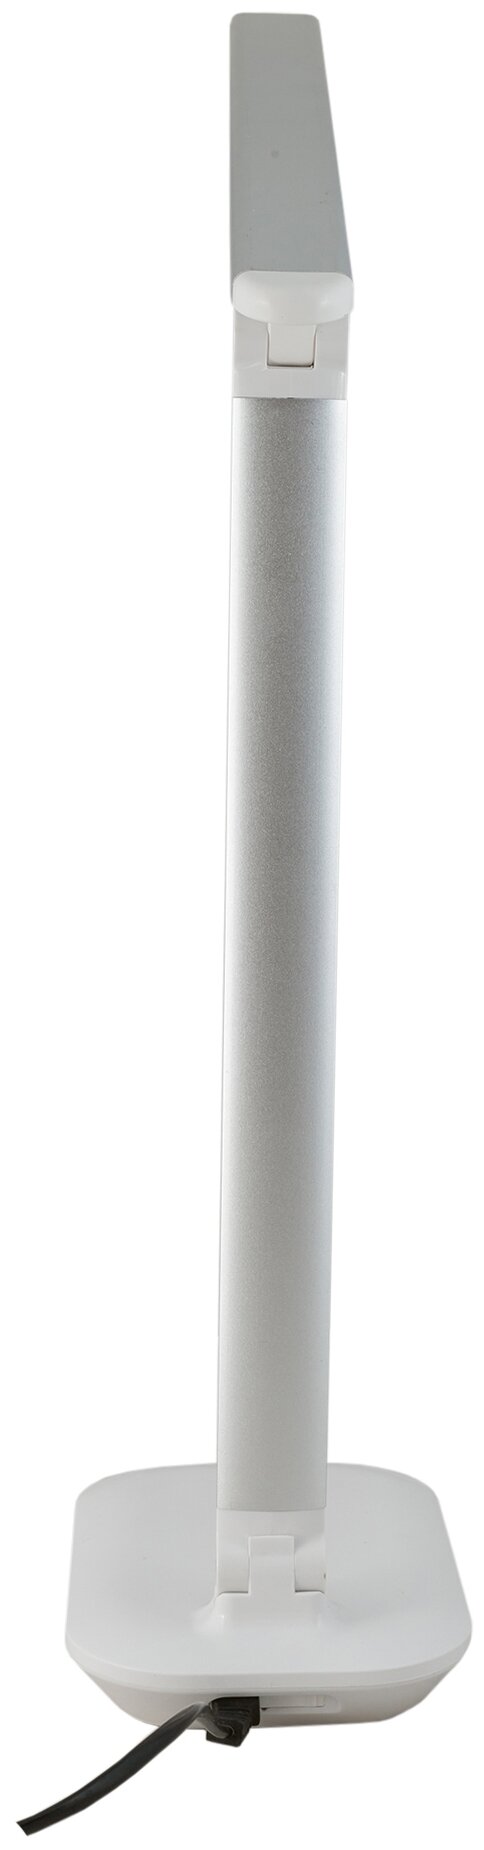 Светильник настольный LED старт СТ113 10 Вт, 650 Лм, лампа настольная светодиодная сенсорная, диммер